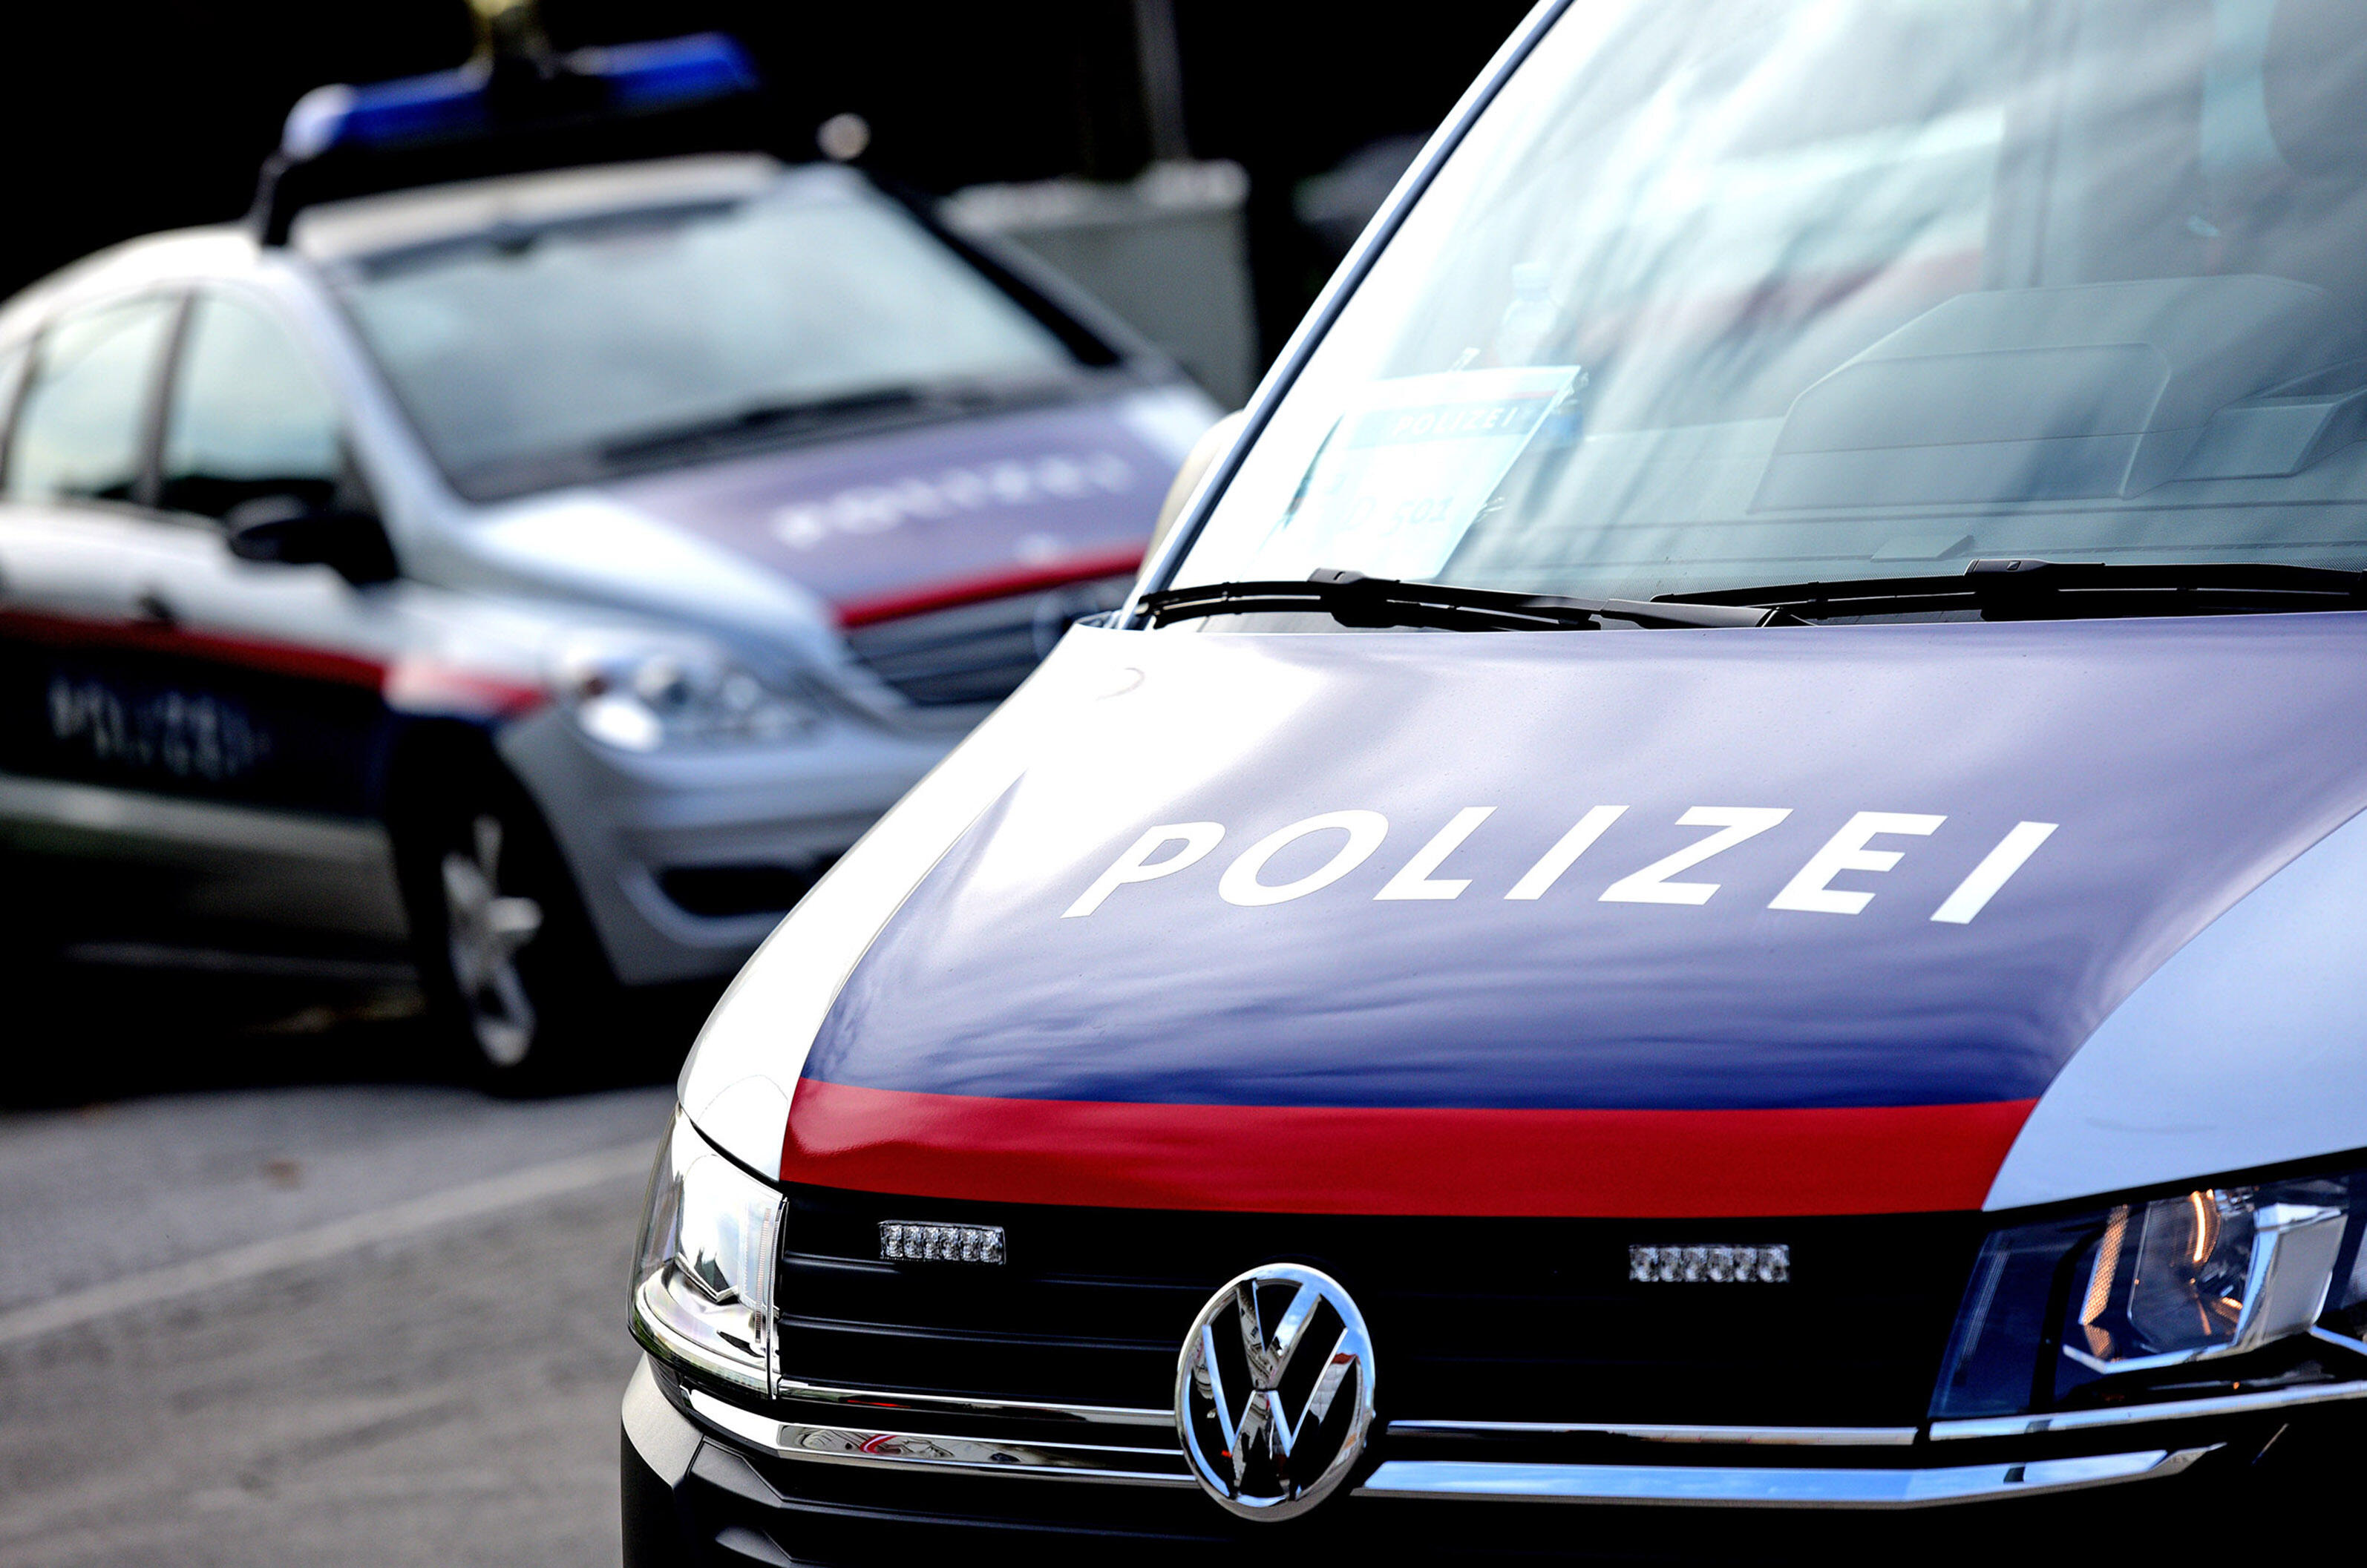 Zwei österreichische Polizeiautos